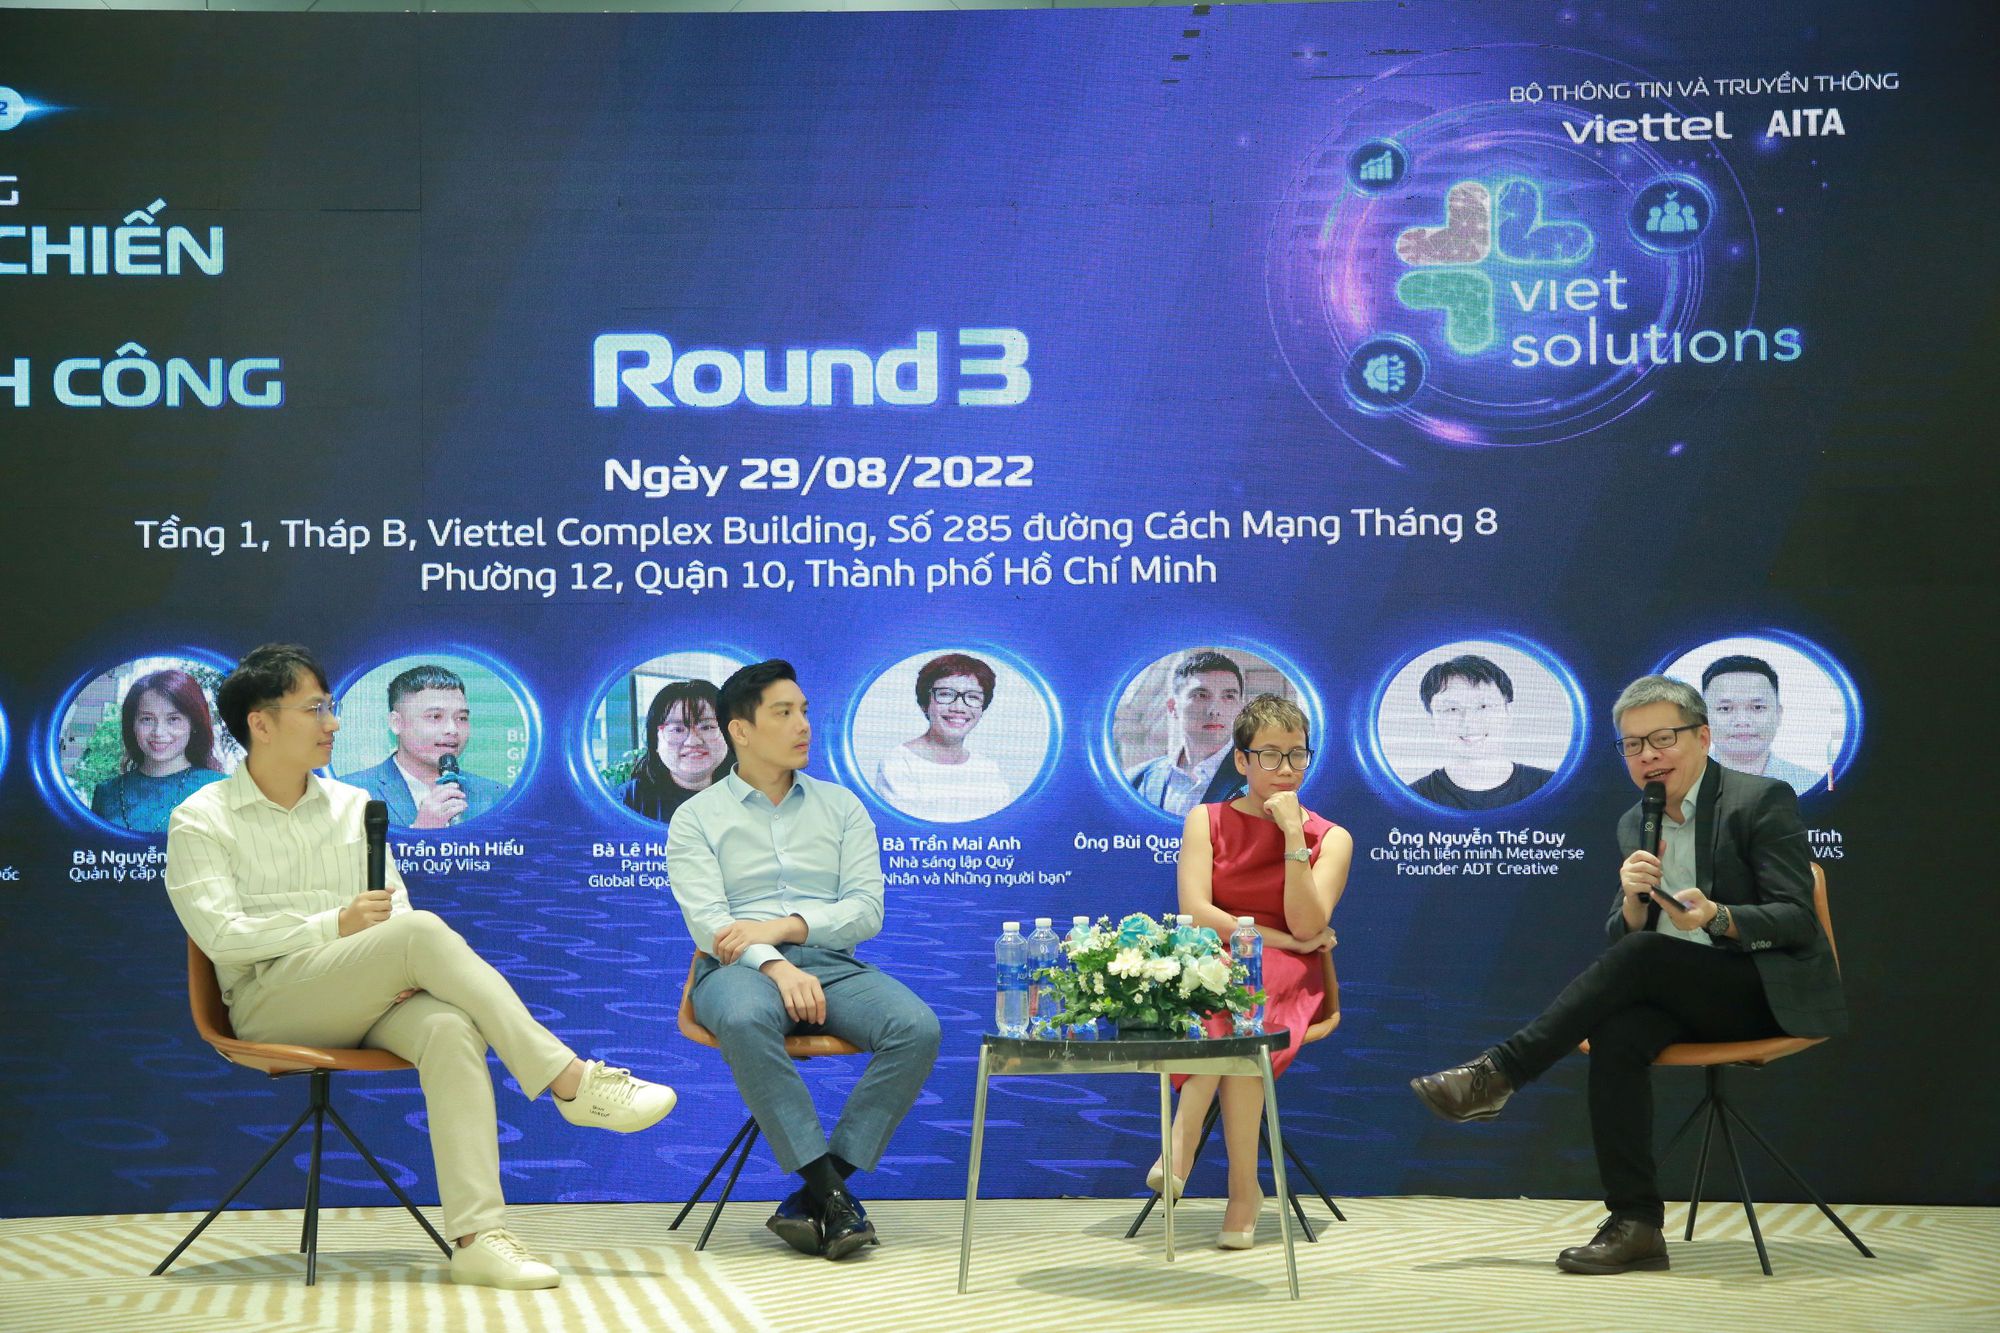 Viet Solutions truyền cảm hứng cho cộng đồng khởi nghiệp thành phố Hồ Chí Minh - Ảnh 1.